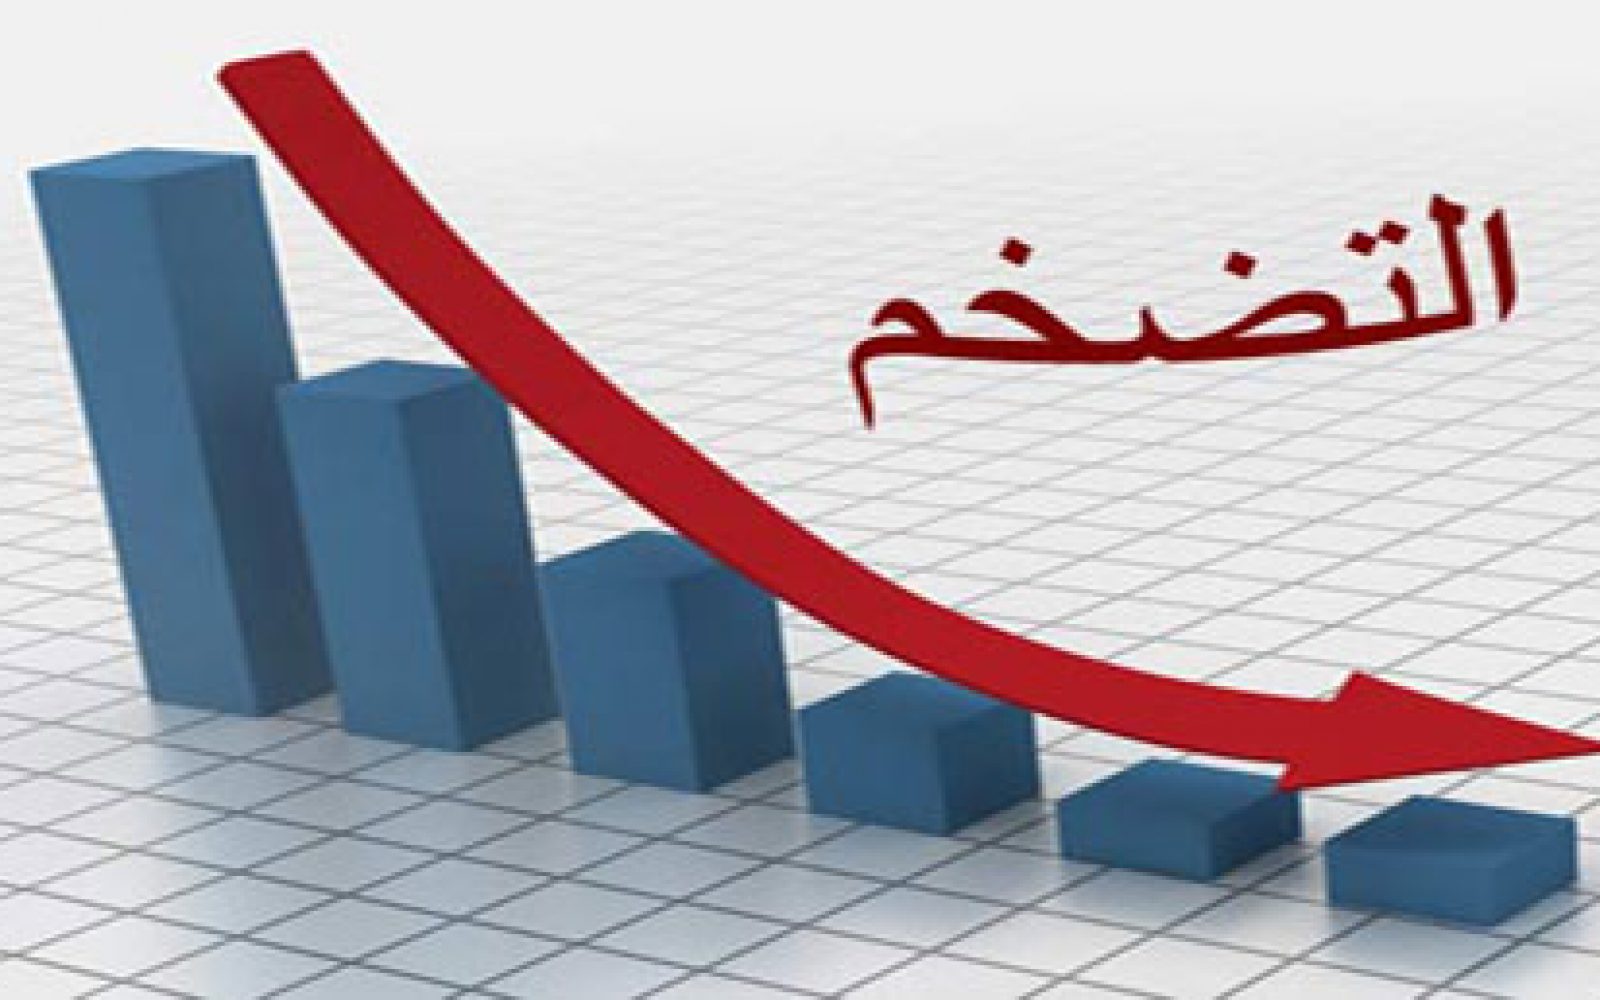   انخفاض معدل التضخم الشهرى «0.5%» لشهر ديسمبر 2020